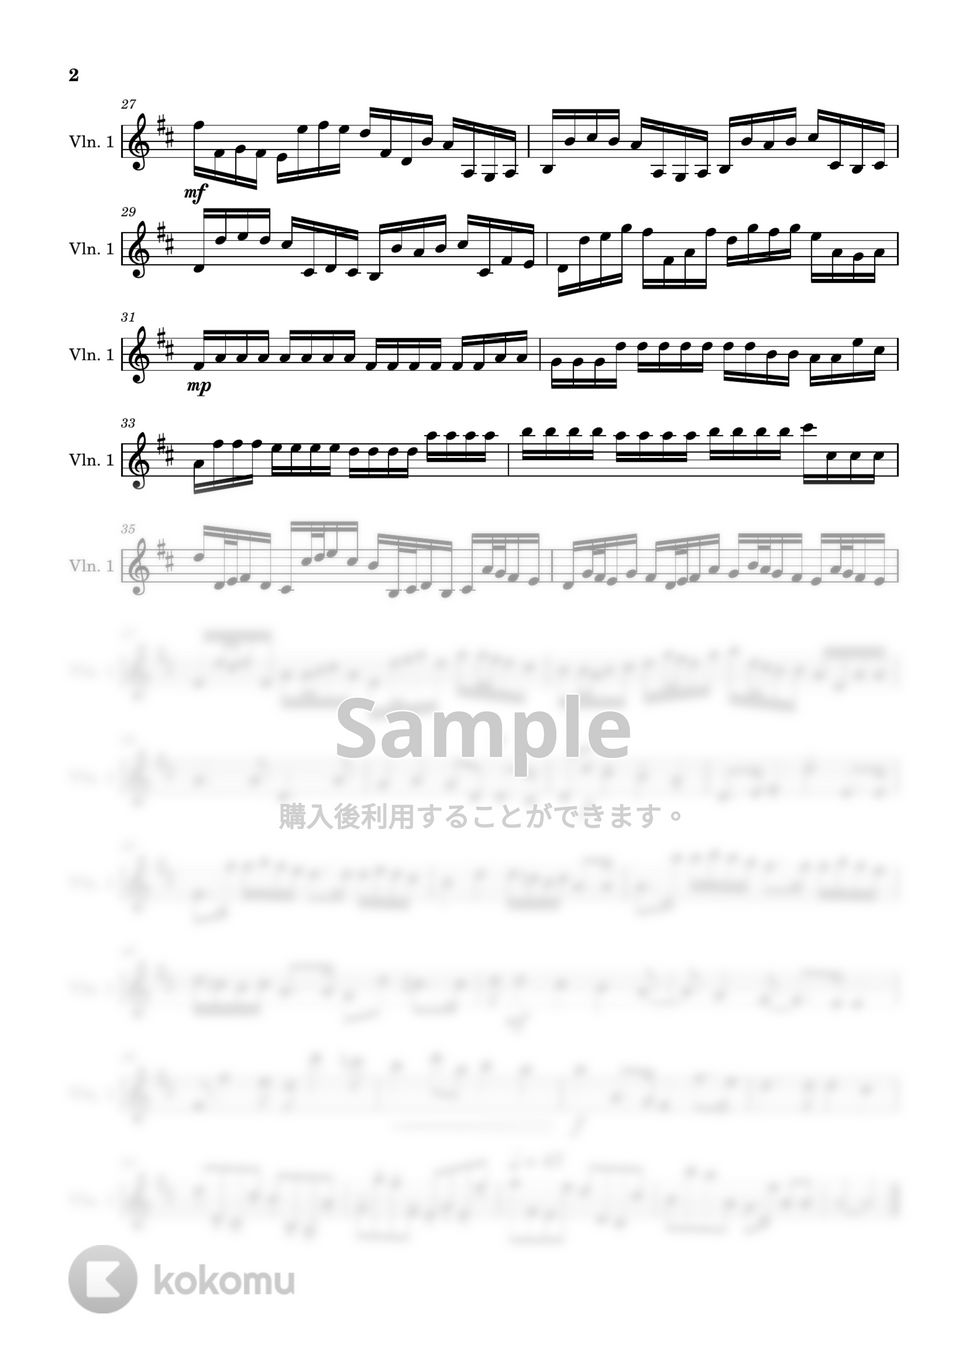 パッハルベル - カノン (ヴァイオリン1-弦楽四重奏) by Cellotto